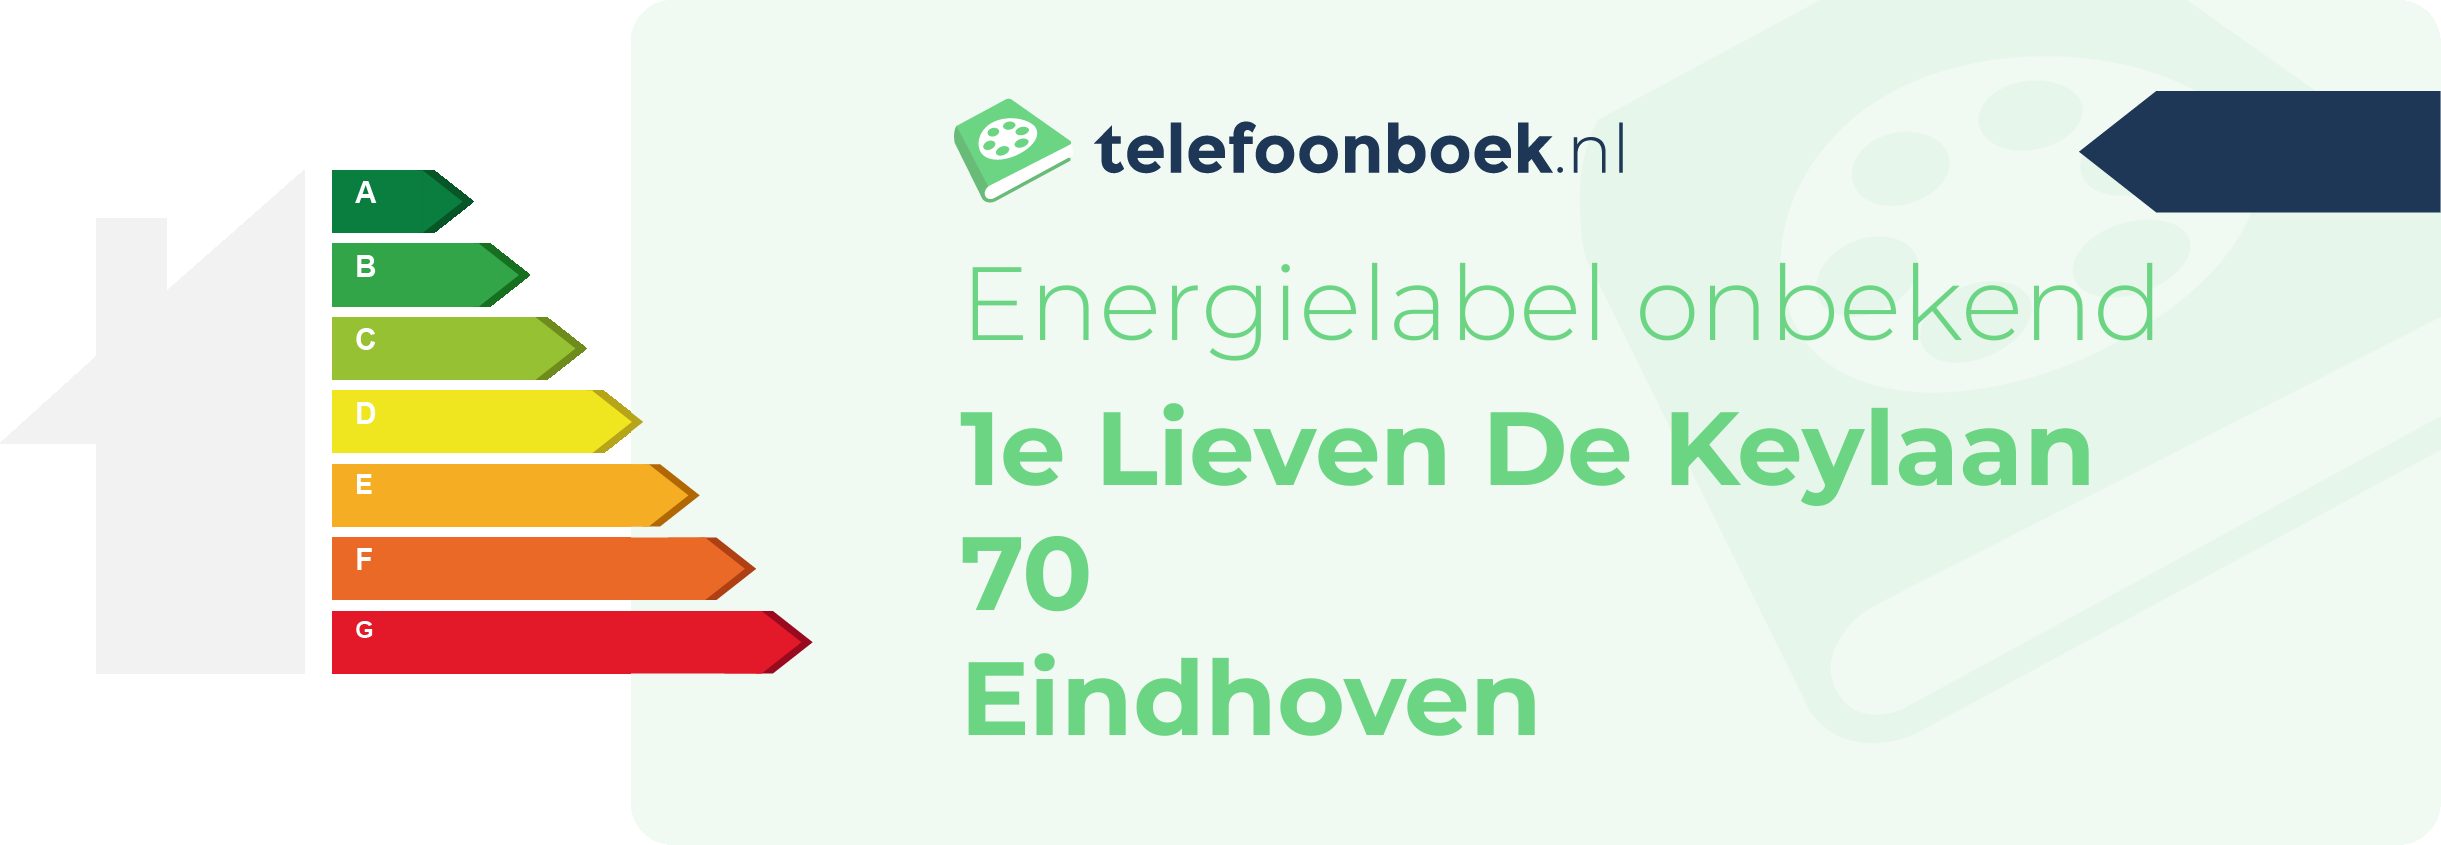 Energielabel 1e Lieven De Keylaan 70 Eindhoven